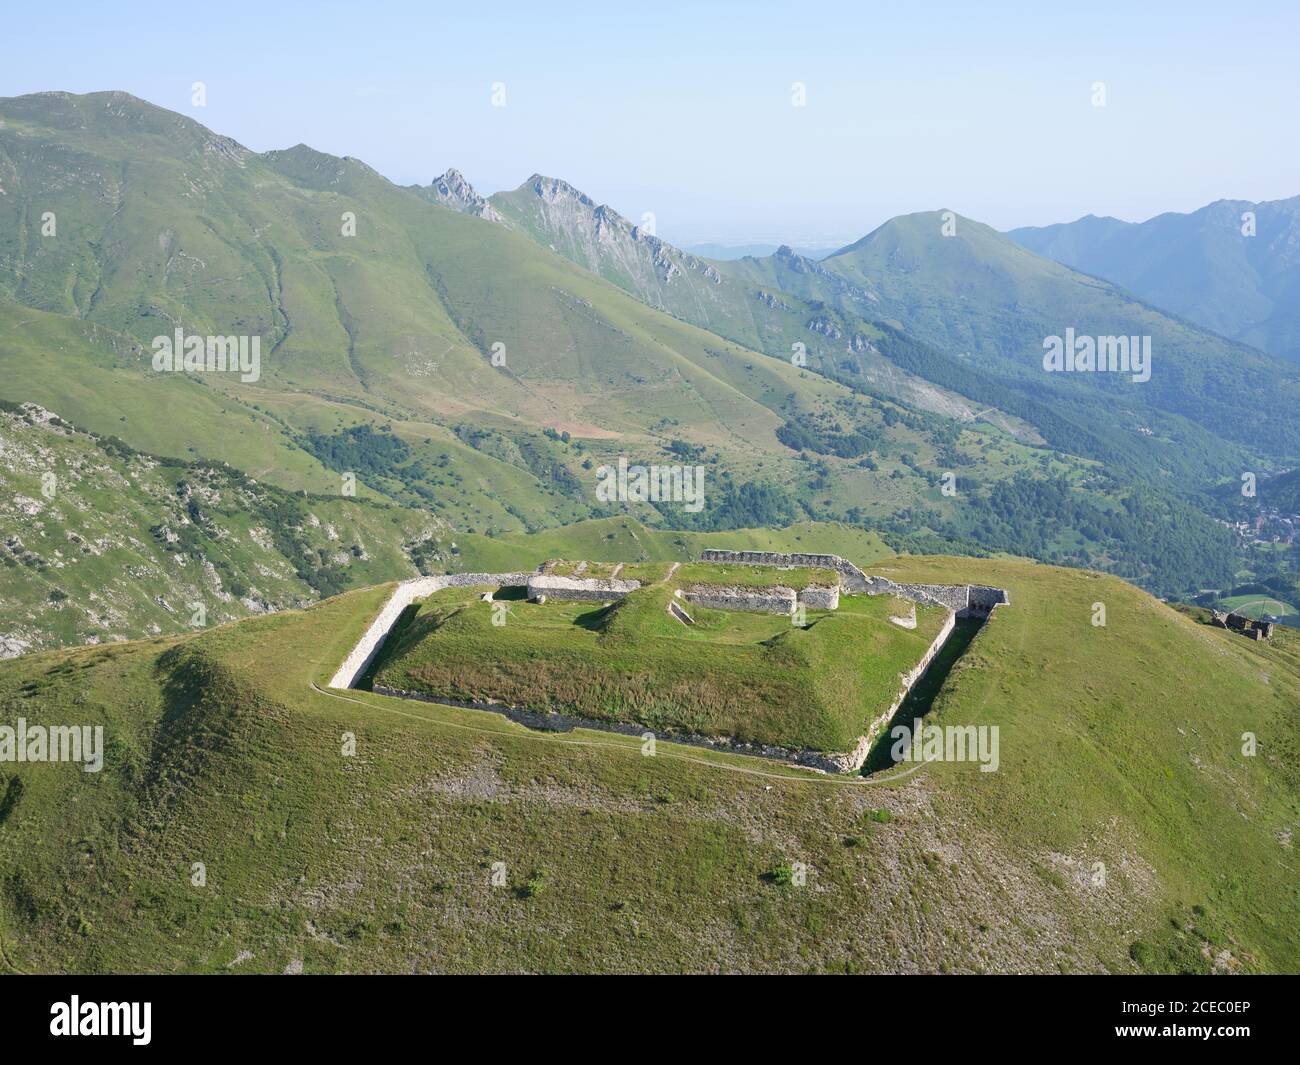 VUE AÉRIENNE.Fort Pernante, une ancienne fortification militaire au-dessus du Col de Tende.Tende, Alpes-Maritimes, France. Banque D'Images